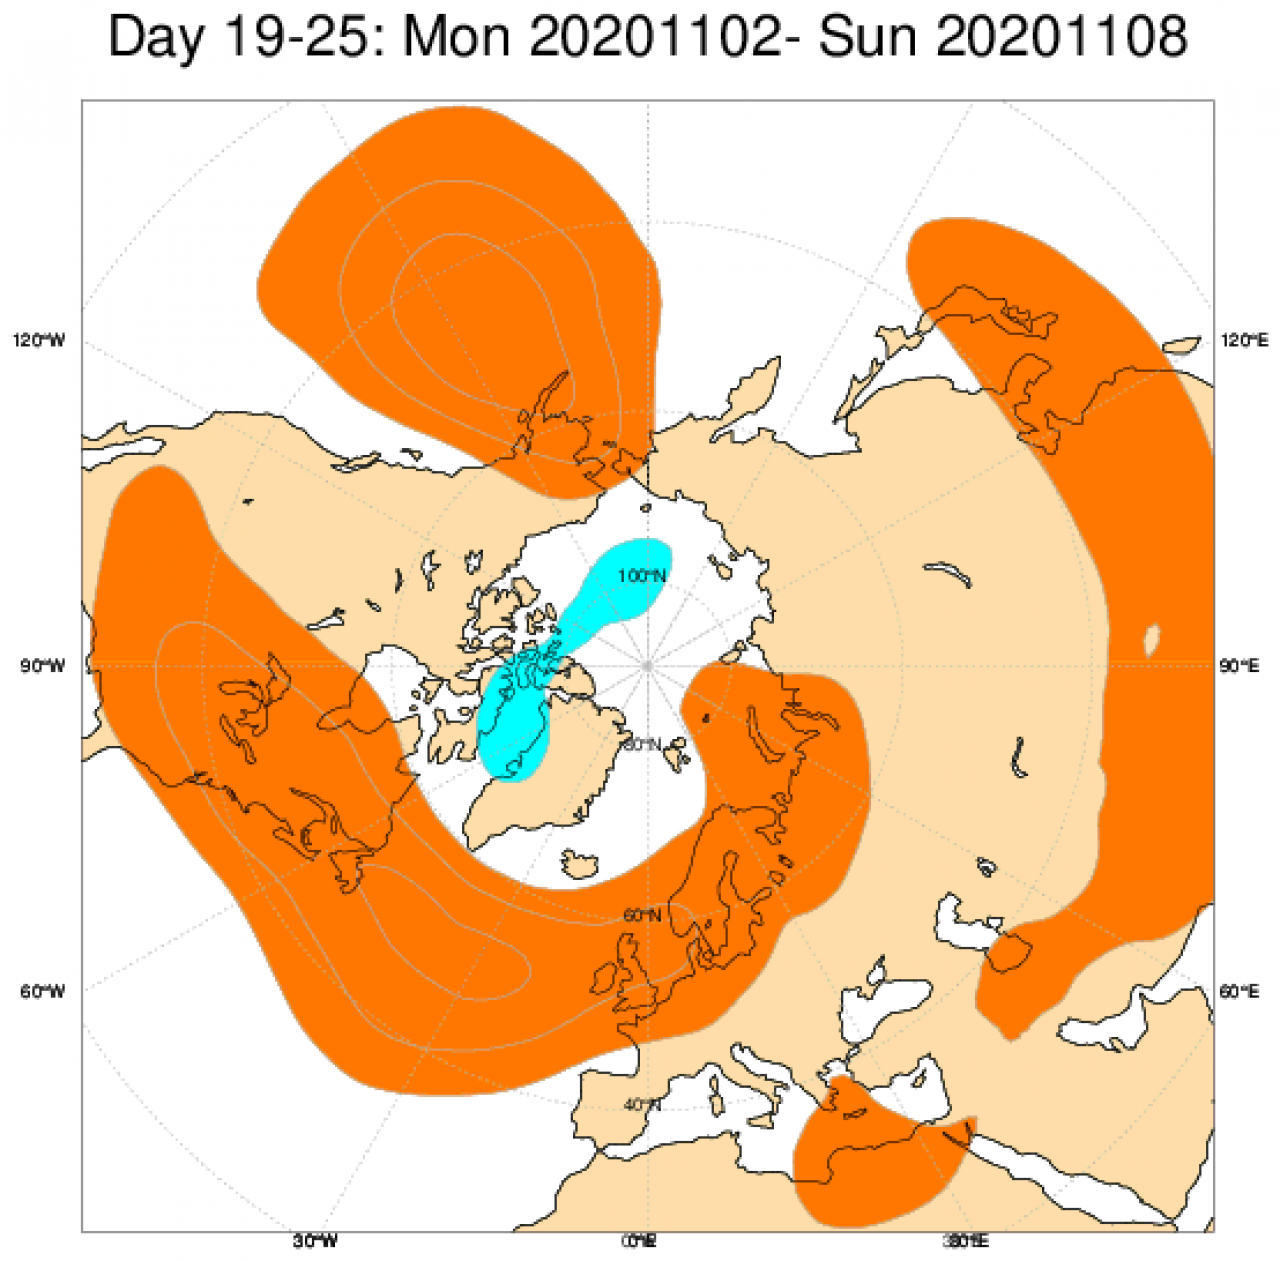 Le anomalie di geopotenziale a 500hPa secondo il modello ECMWF, mediate nel periodo 2-8 novembre